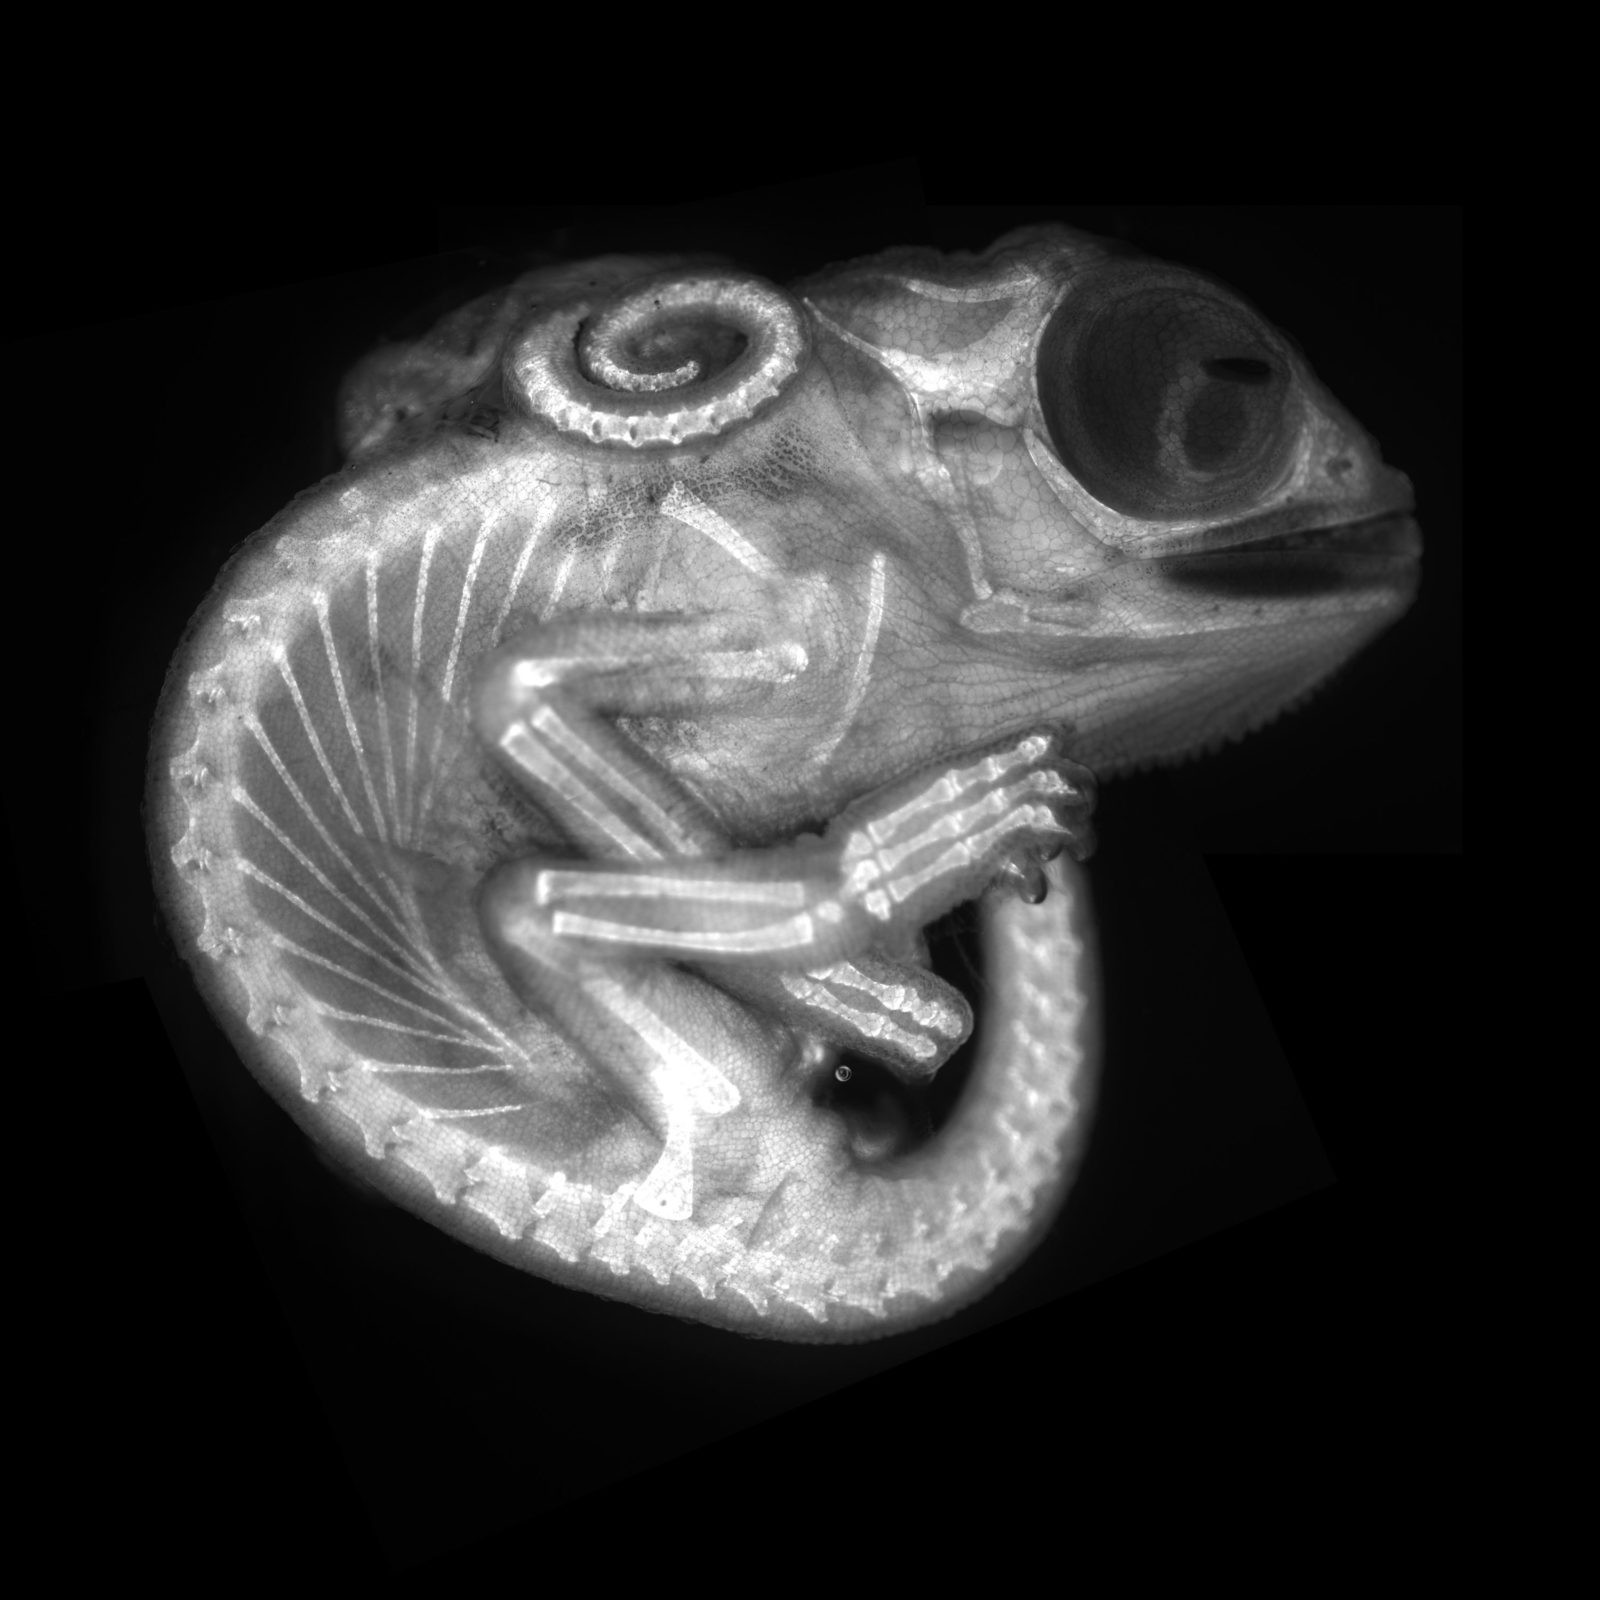 8 lugar: embrião de camaleão (Foto: Allan Carrillo-Baltodano et al./2020 Photomicrography Competition)